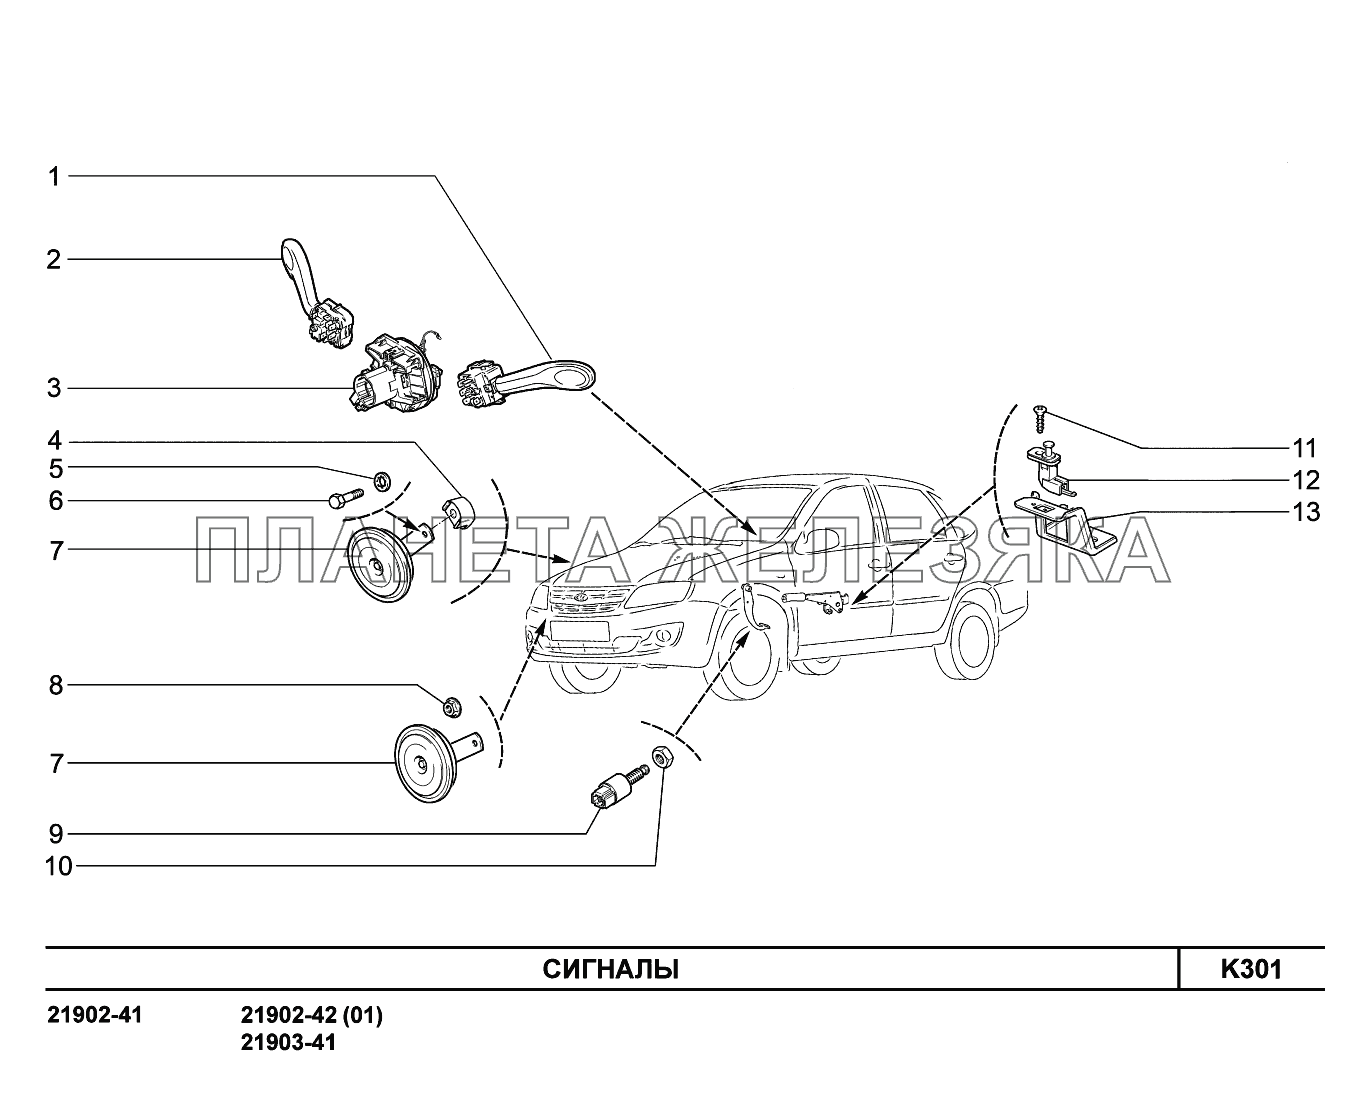 K301. Сигналы Lada Granta-2190